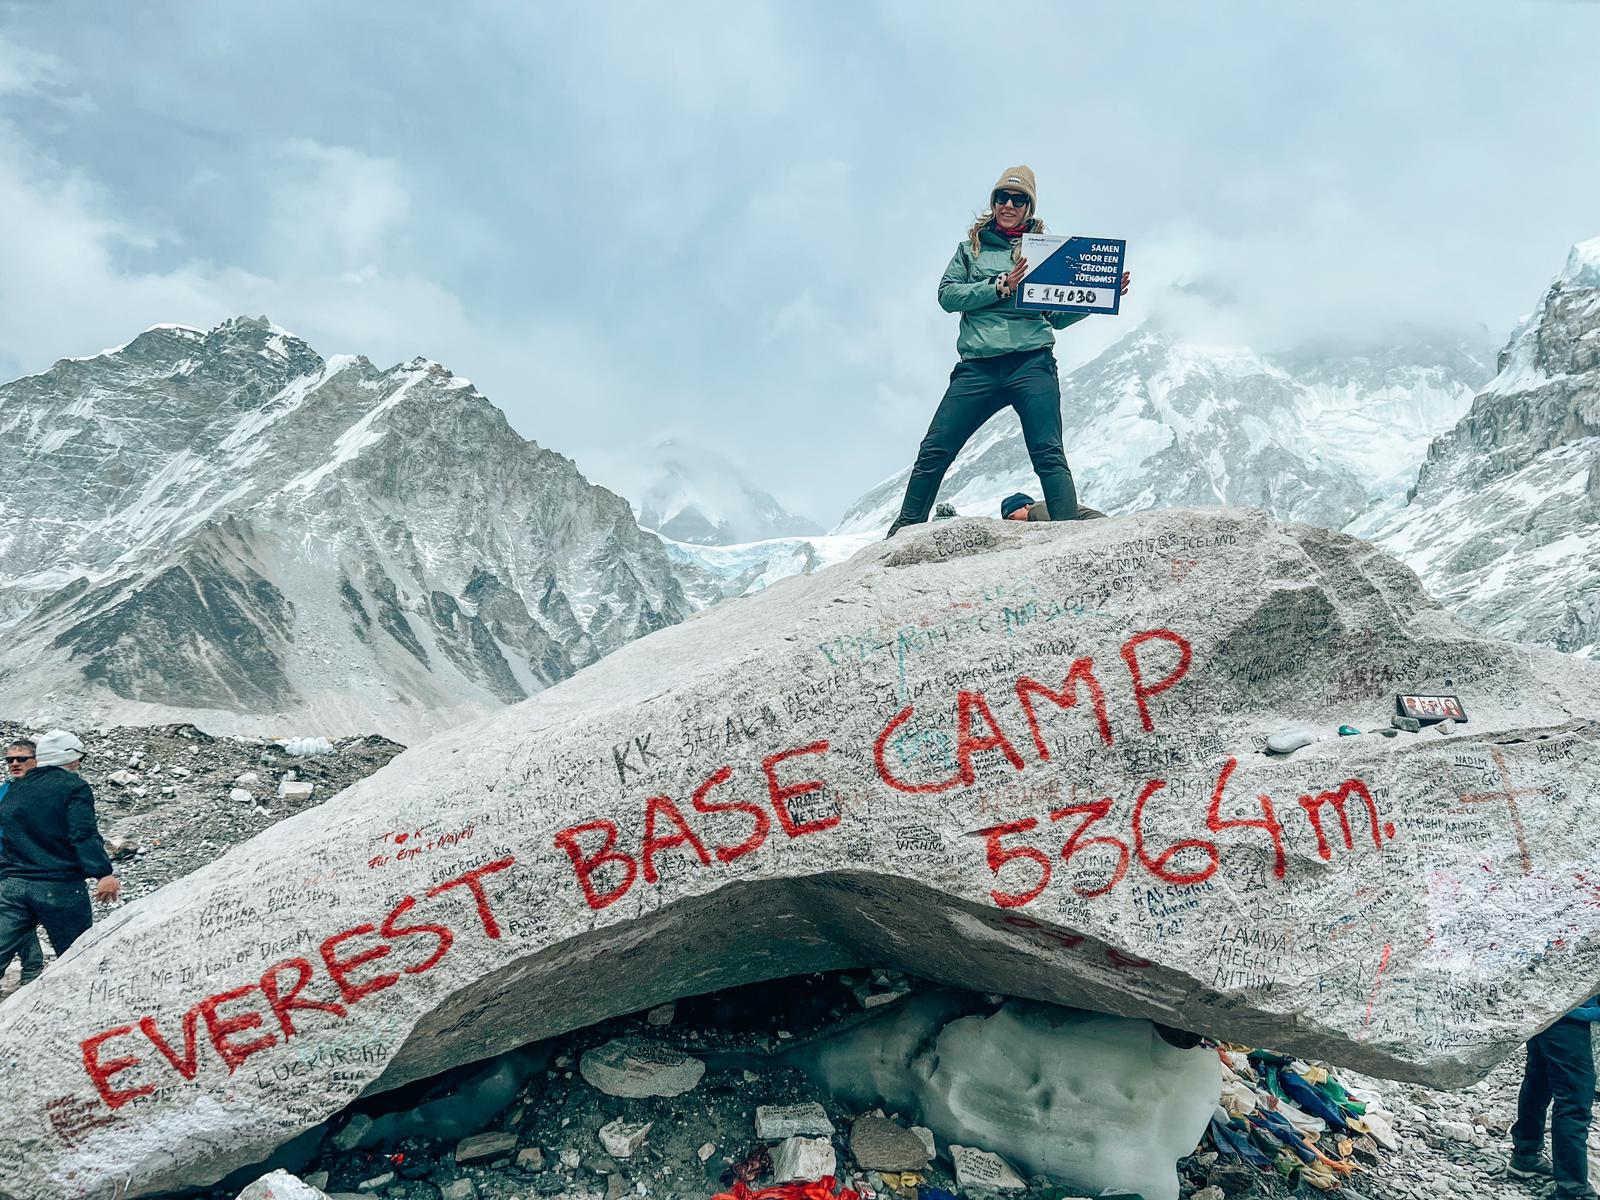 Elles bij Mount Everest Base Camp